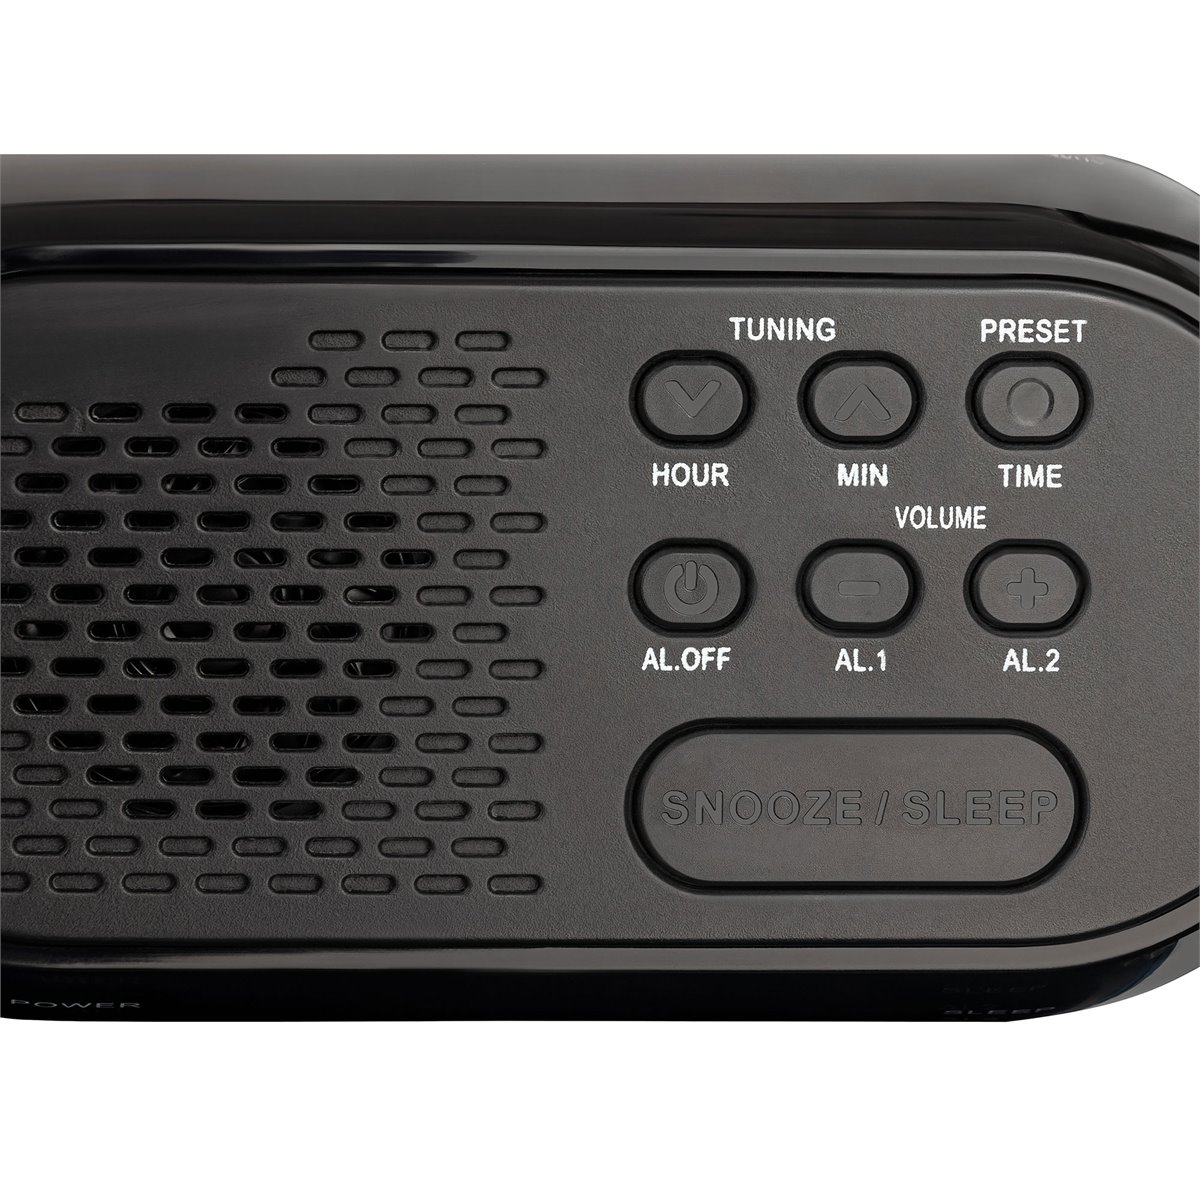 Roadstar CLR-2477 Radio Reloj Despertador PLL FM, Puerto USB Carga Rápida,  2 Alarmas, Gran Pantalla LCD, Snooze, , Negro - Conforama